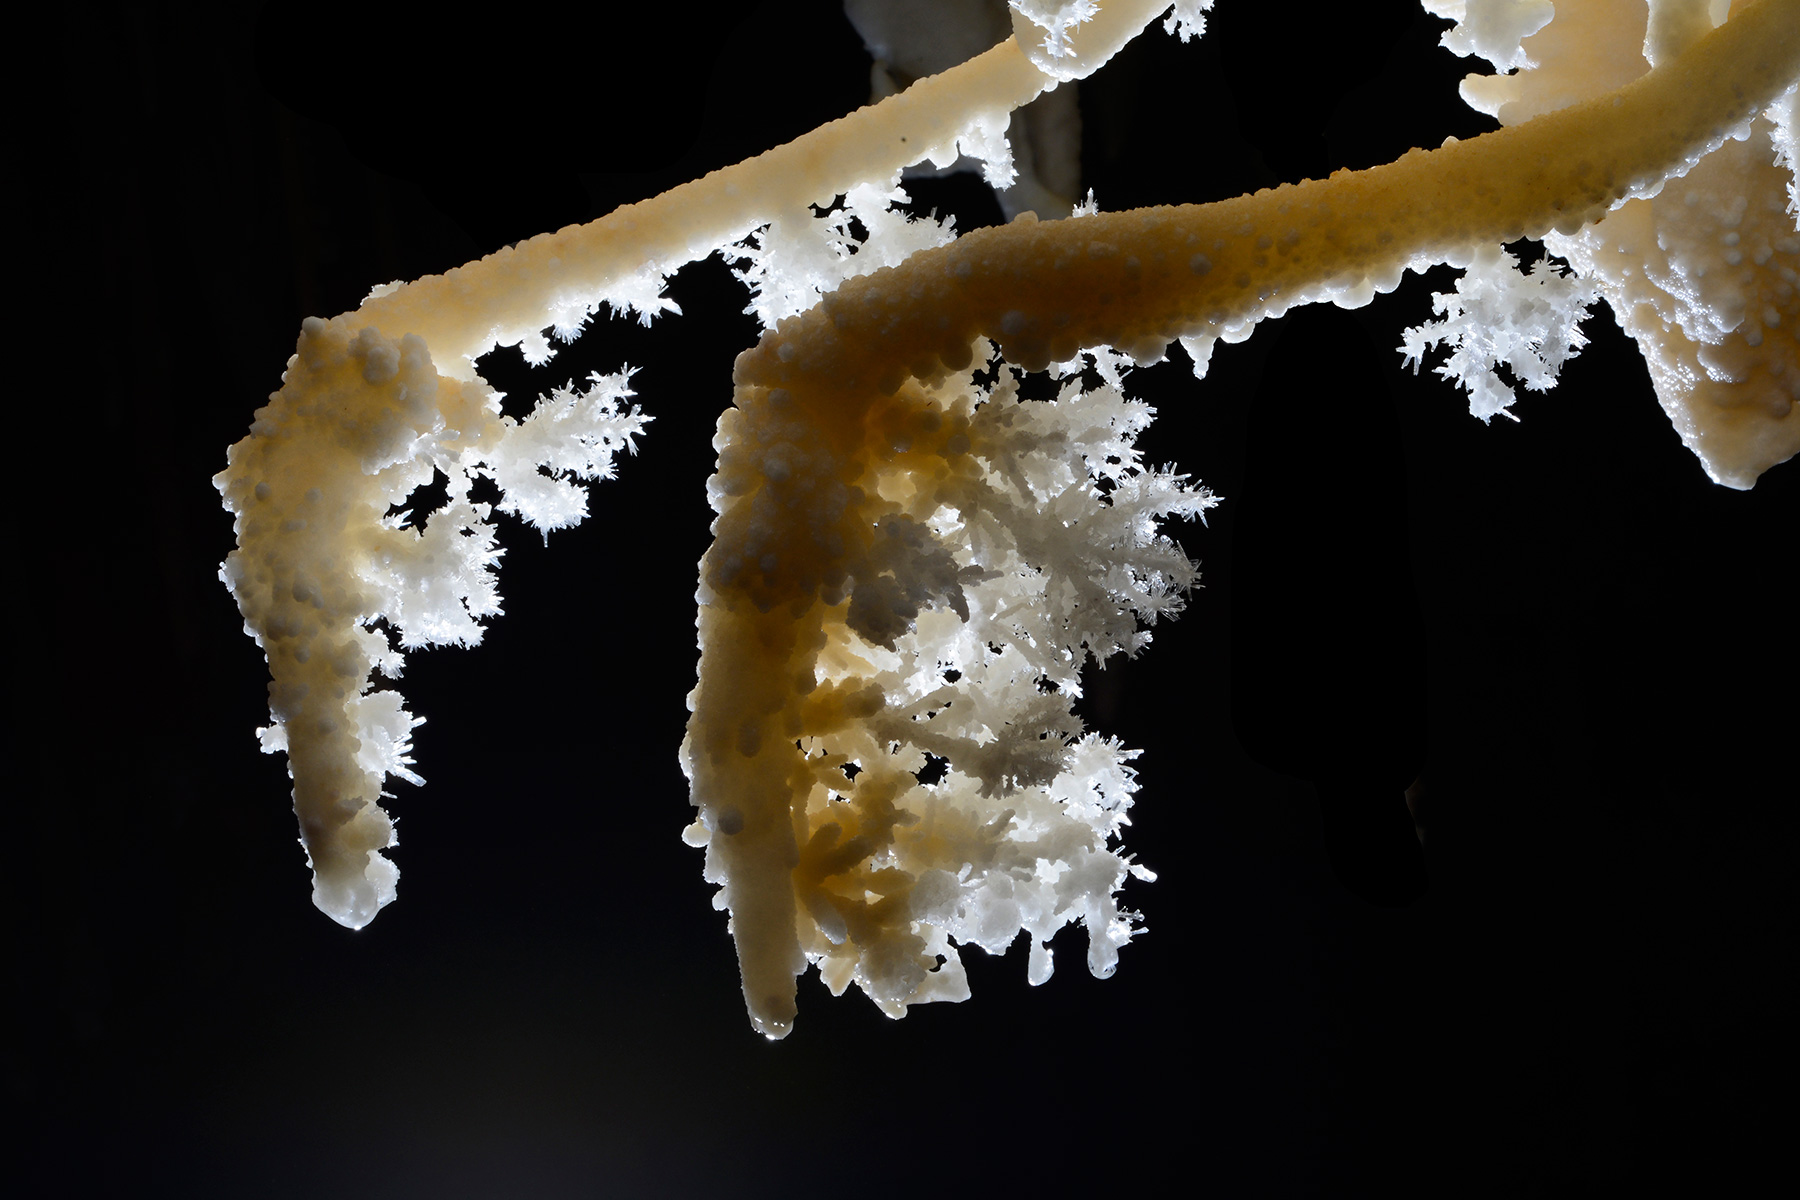 Détail de cristaux d'aragonite au bout de stalactites excentriques